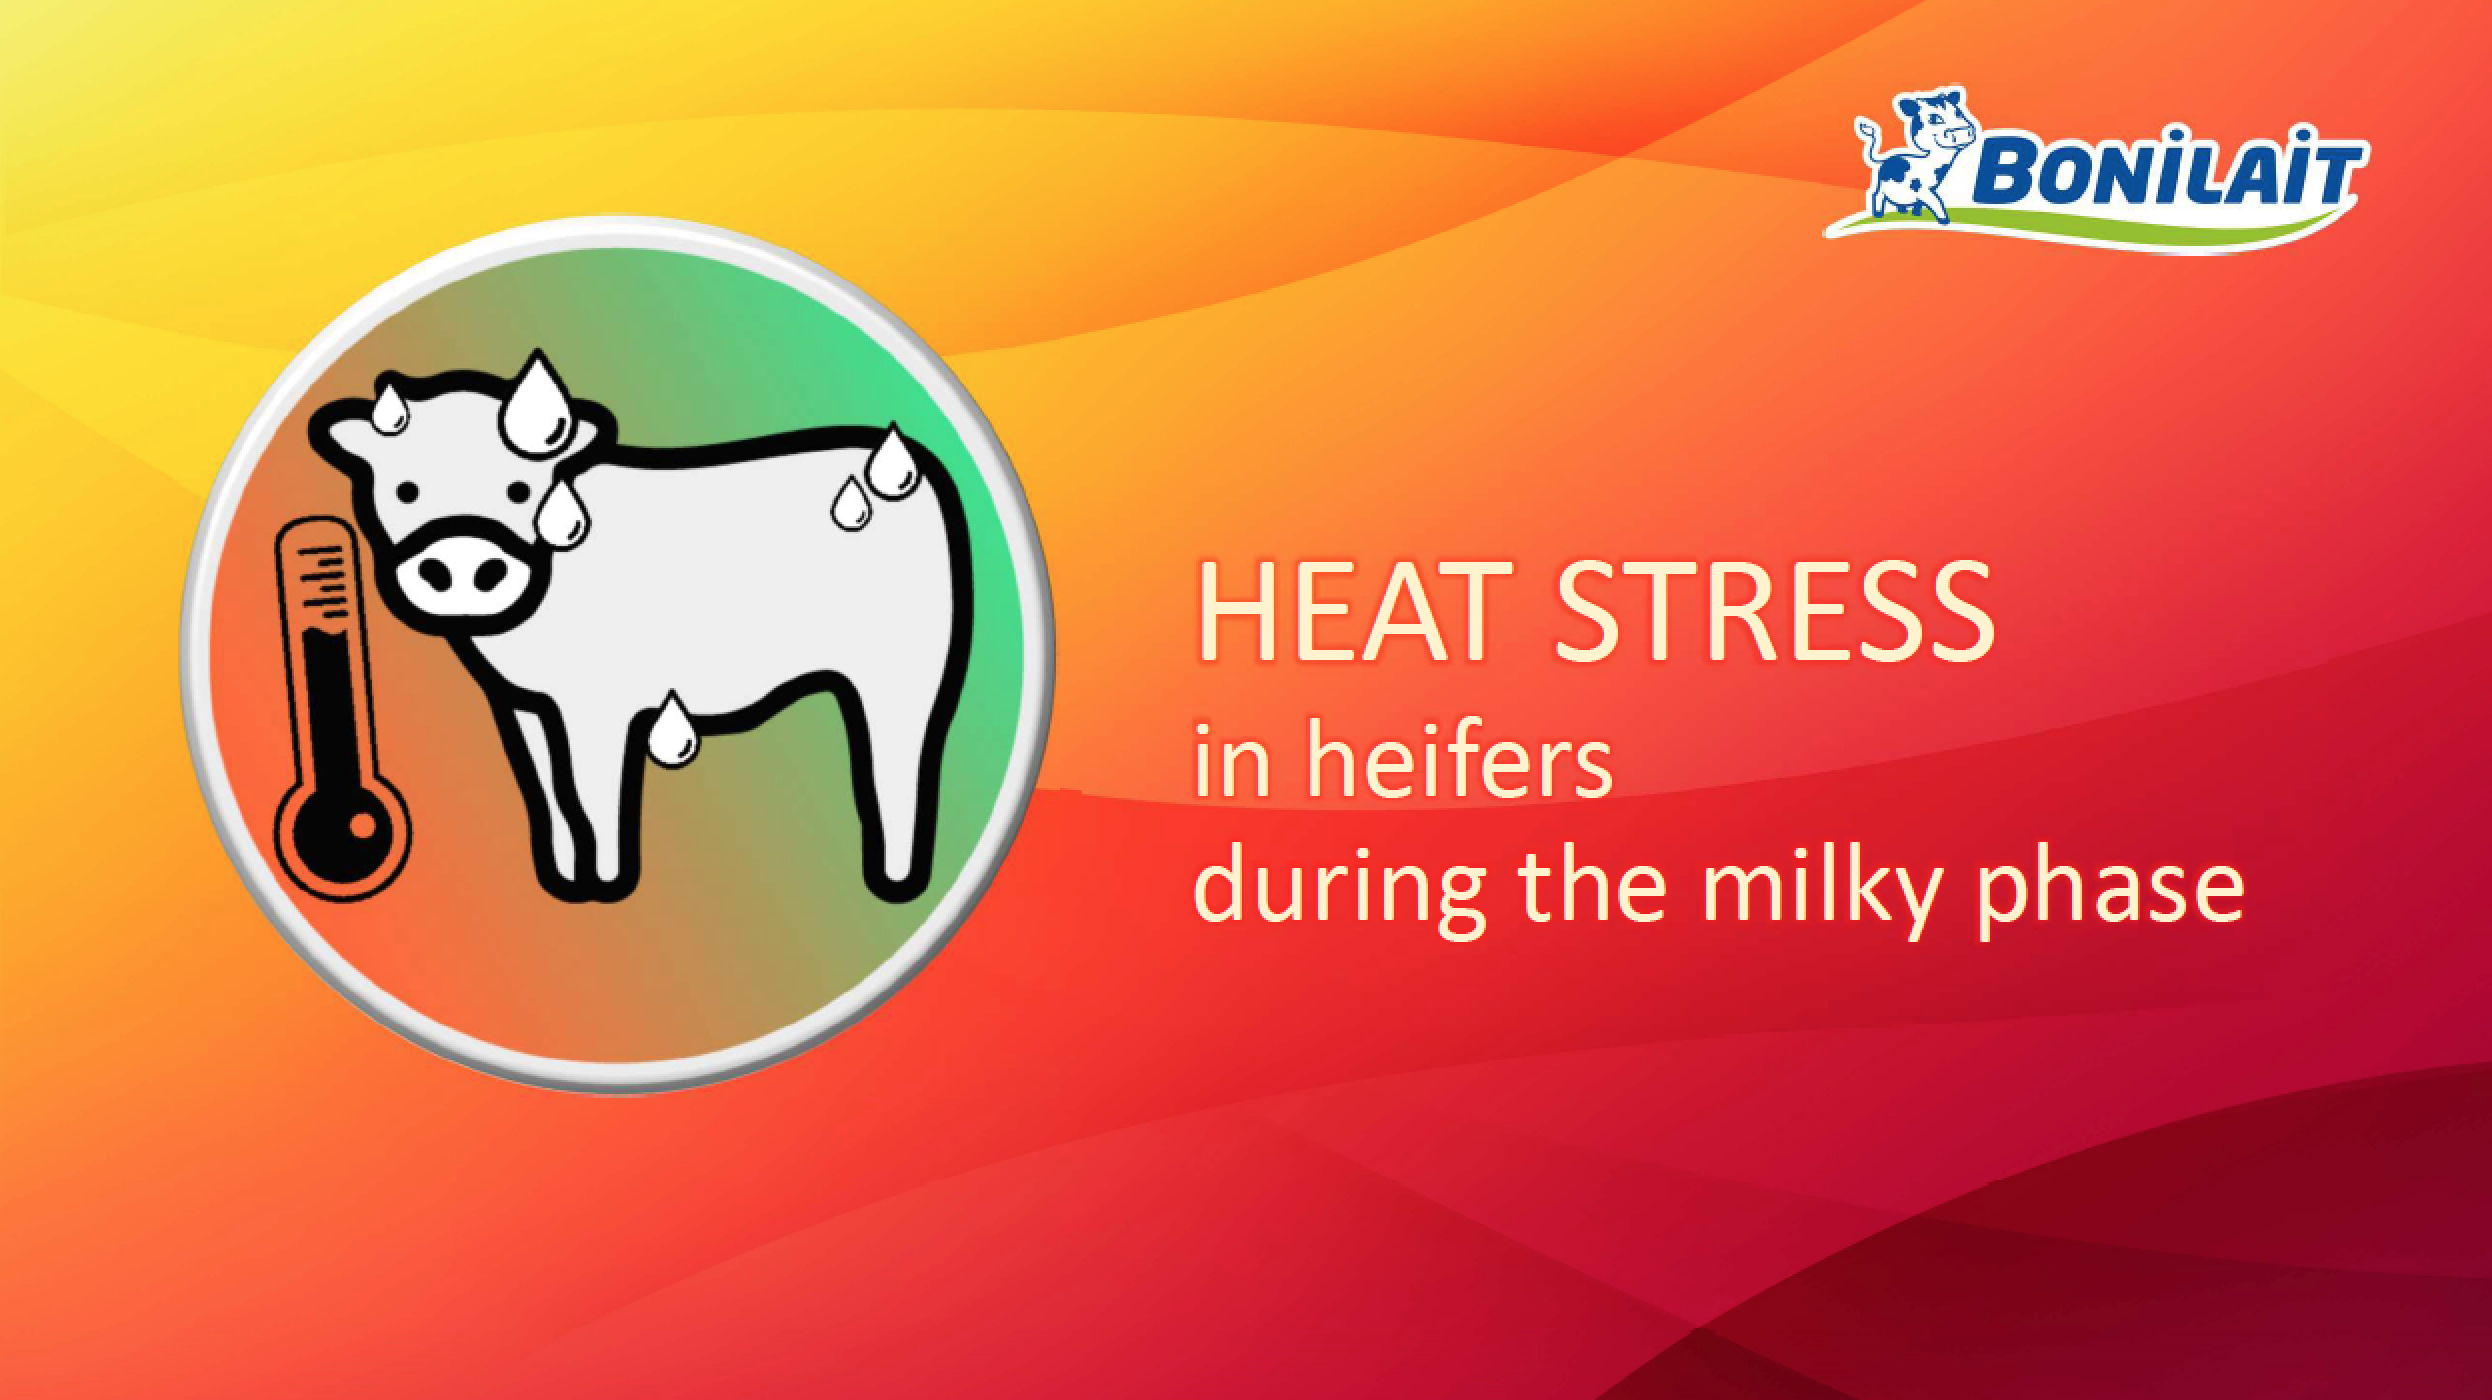 Heat stress in heifers